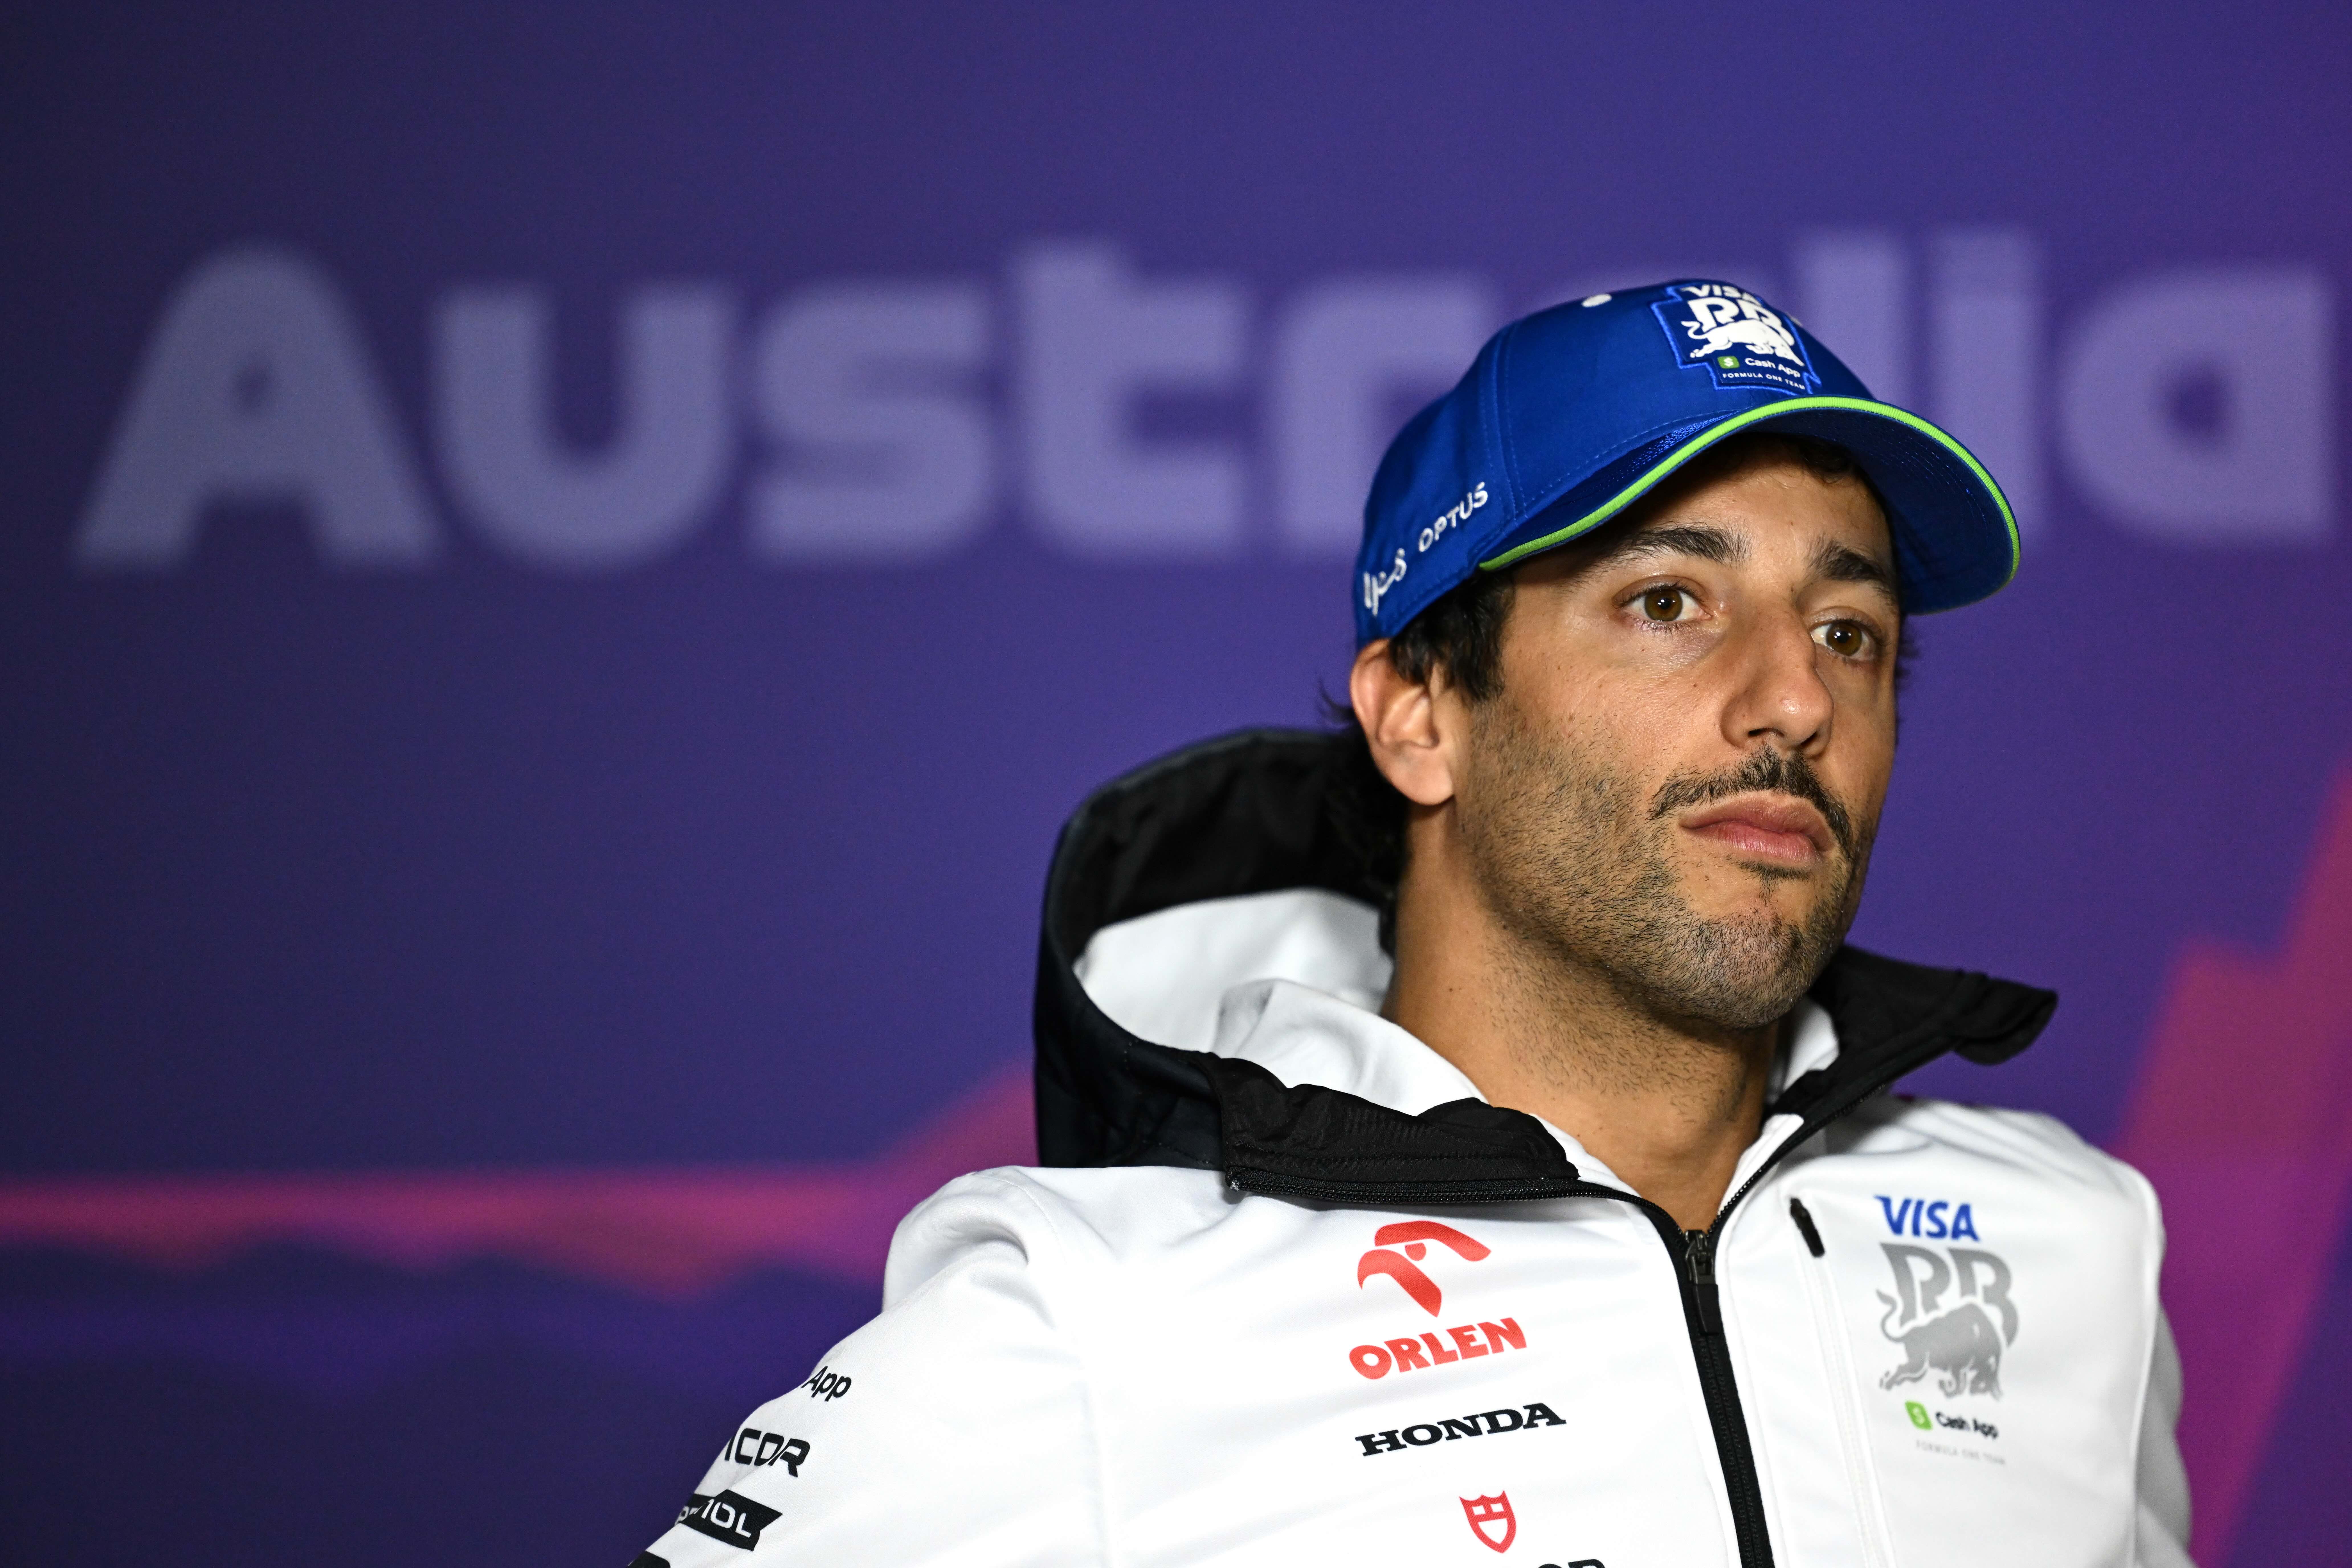 Daniel Ricciardo sitting in the press conference ahead of the Australian Grand Prix